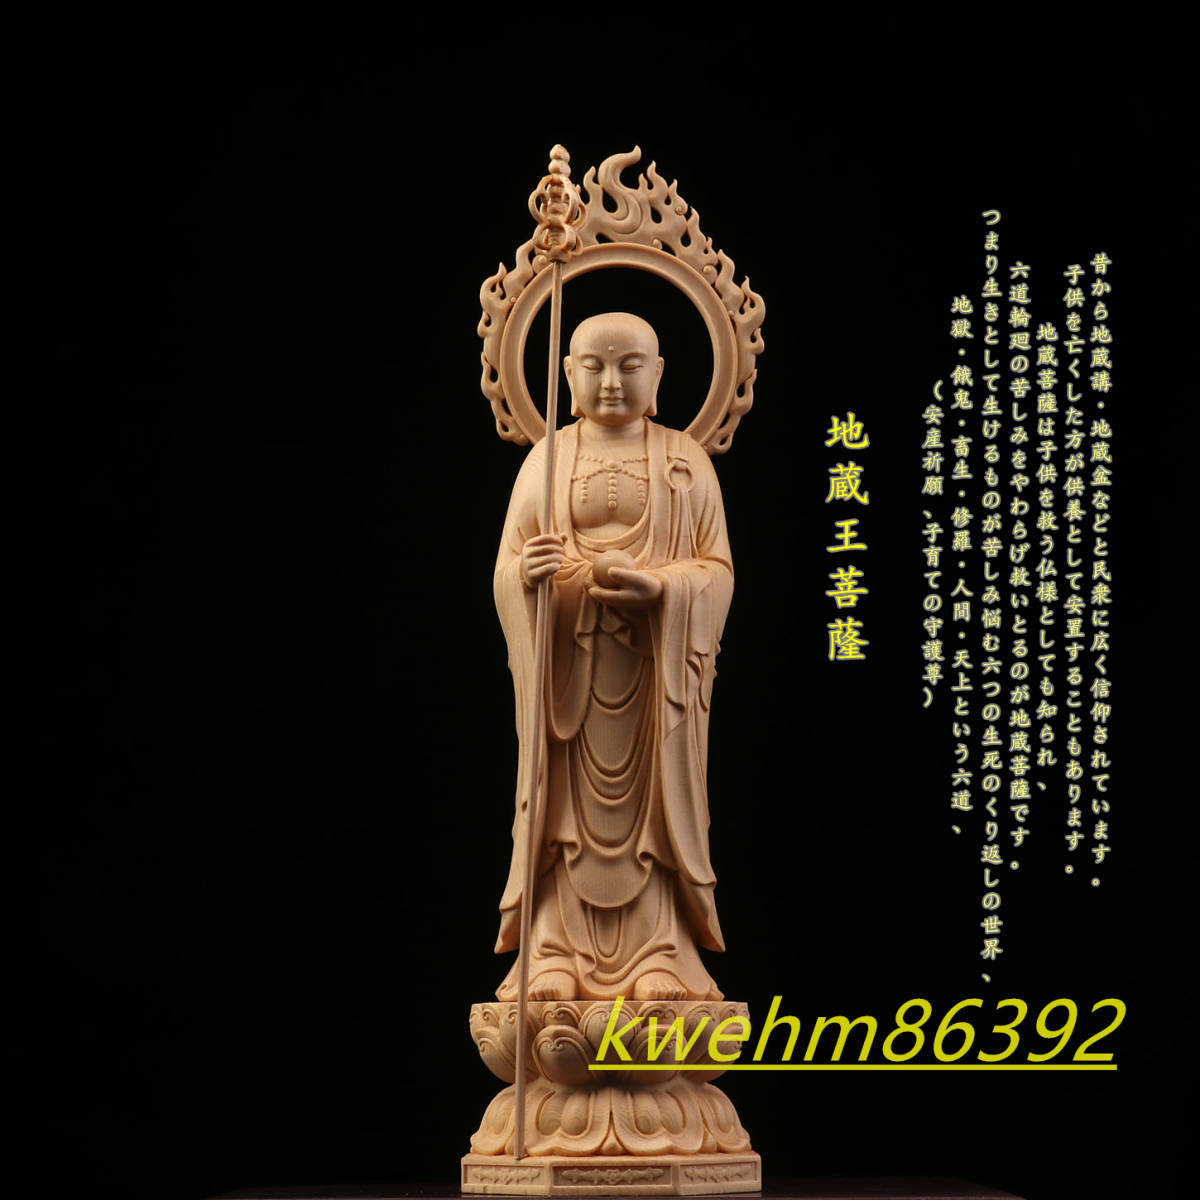 珍品 木彫仏像 地蔵菩薩立像 地蔵菩薩 地蔵菩薩像 本金 切金 彫刻